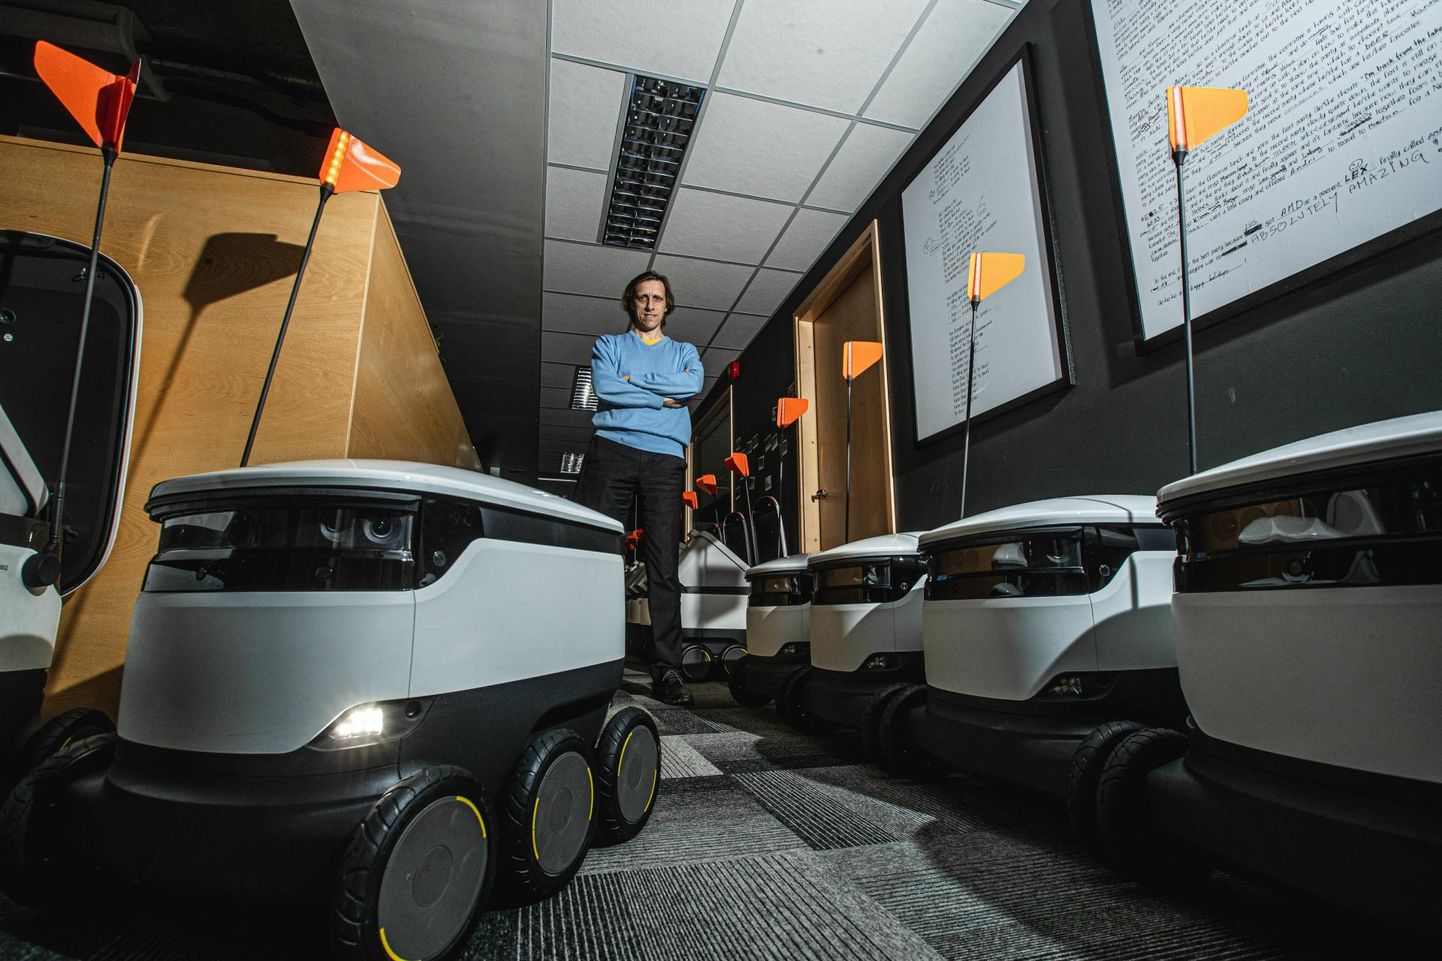 Starship Technologiesi looja ja juhi Ahti Heinla sõnul on nende pakirobotid arenenud mitu korda efektiivsemaks.